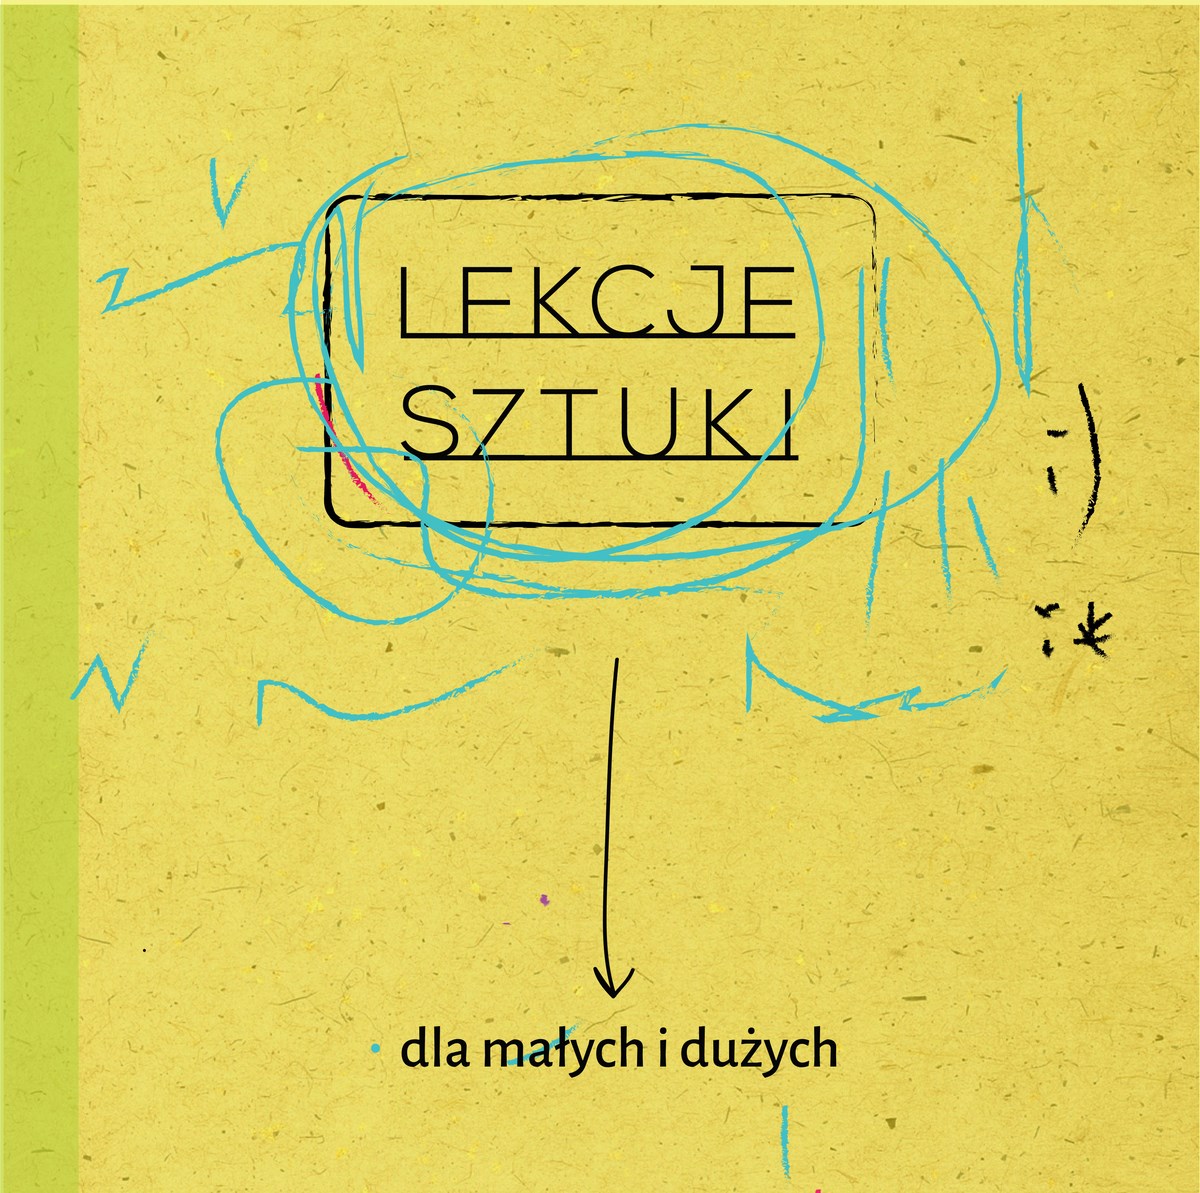 Lekcje sztuki dla małych i dużych, Warsztaty Kultury w Lublinie, plakat (źródło: materiały prasowe organizatora)